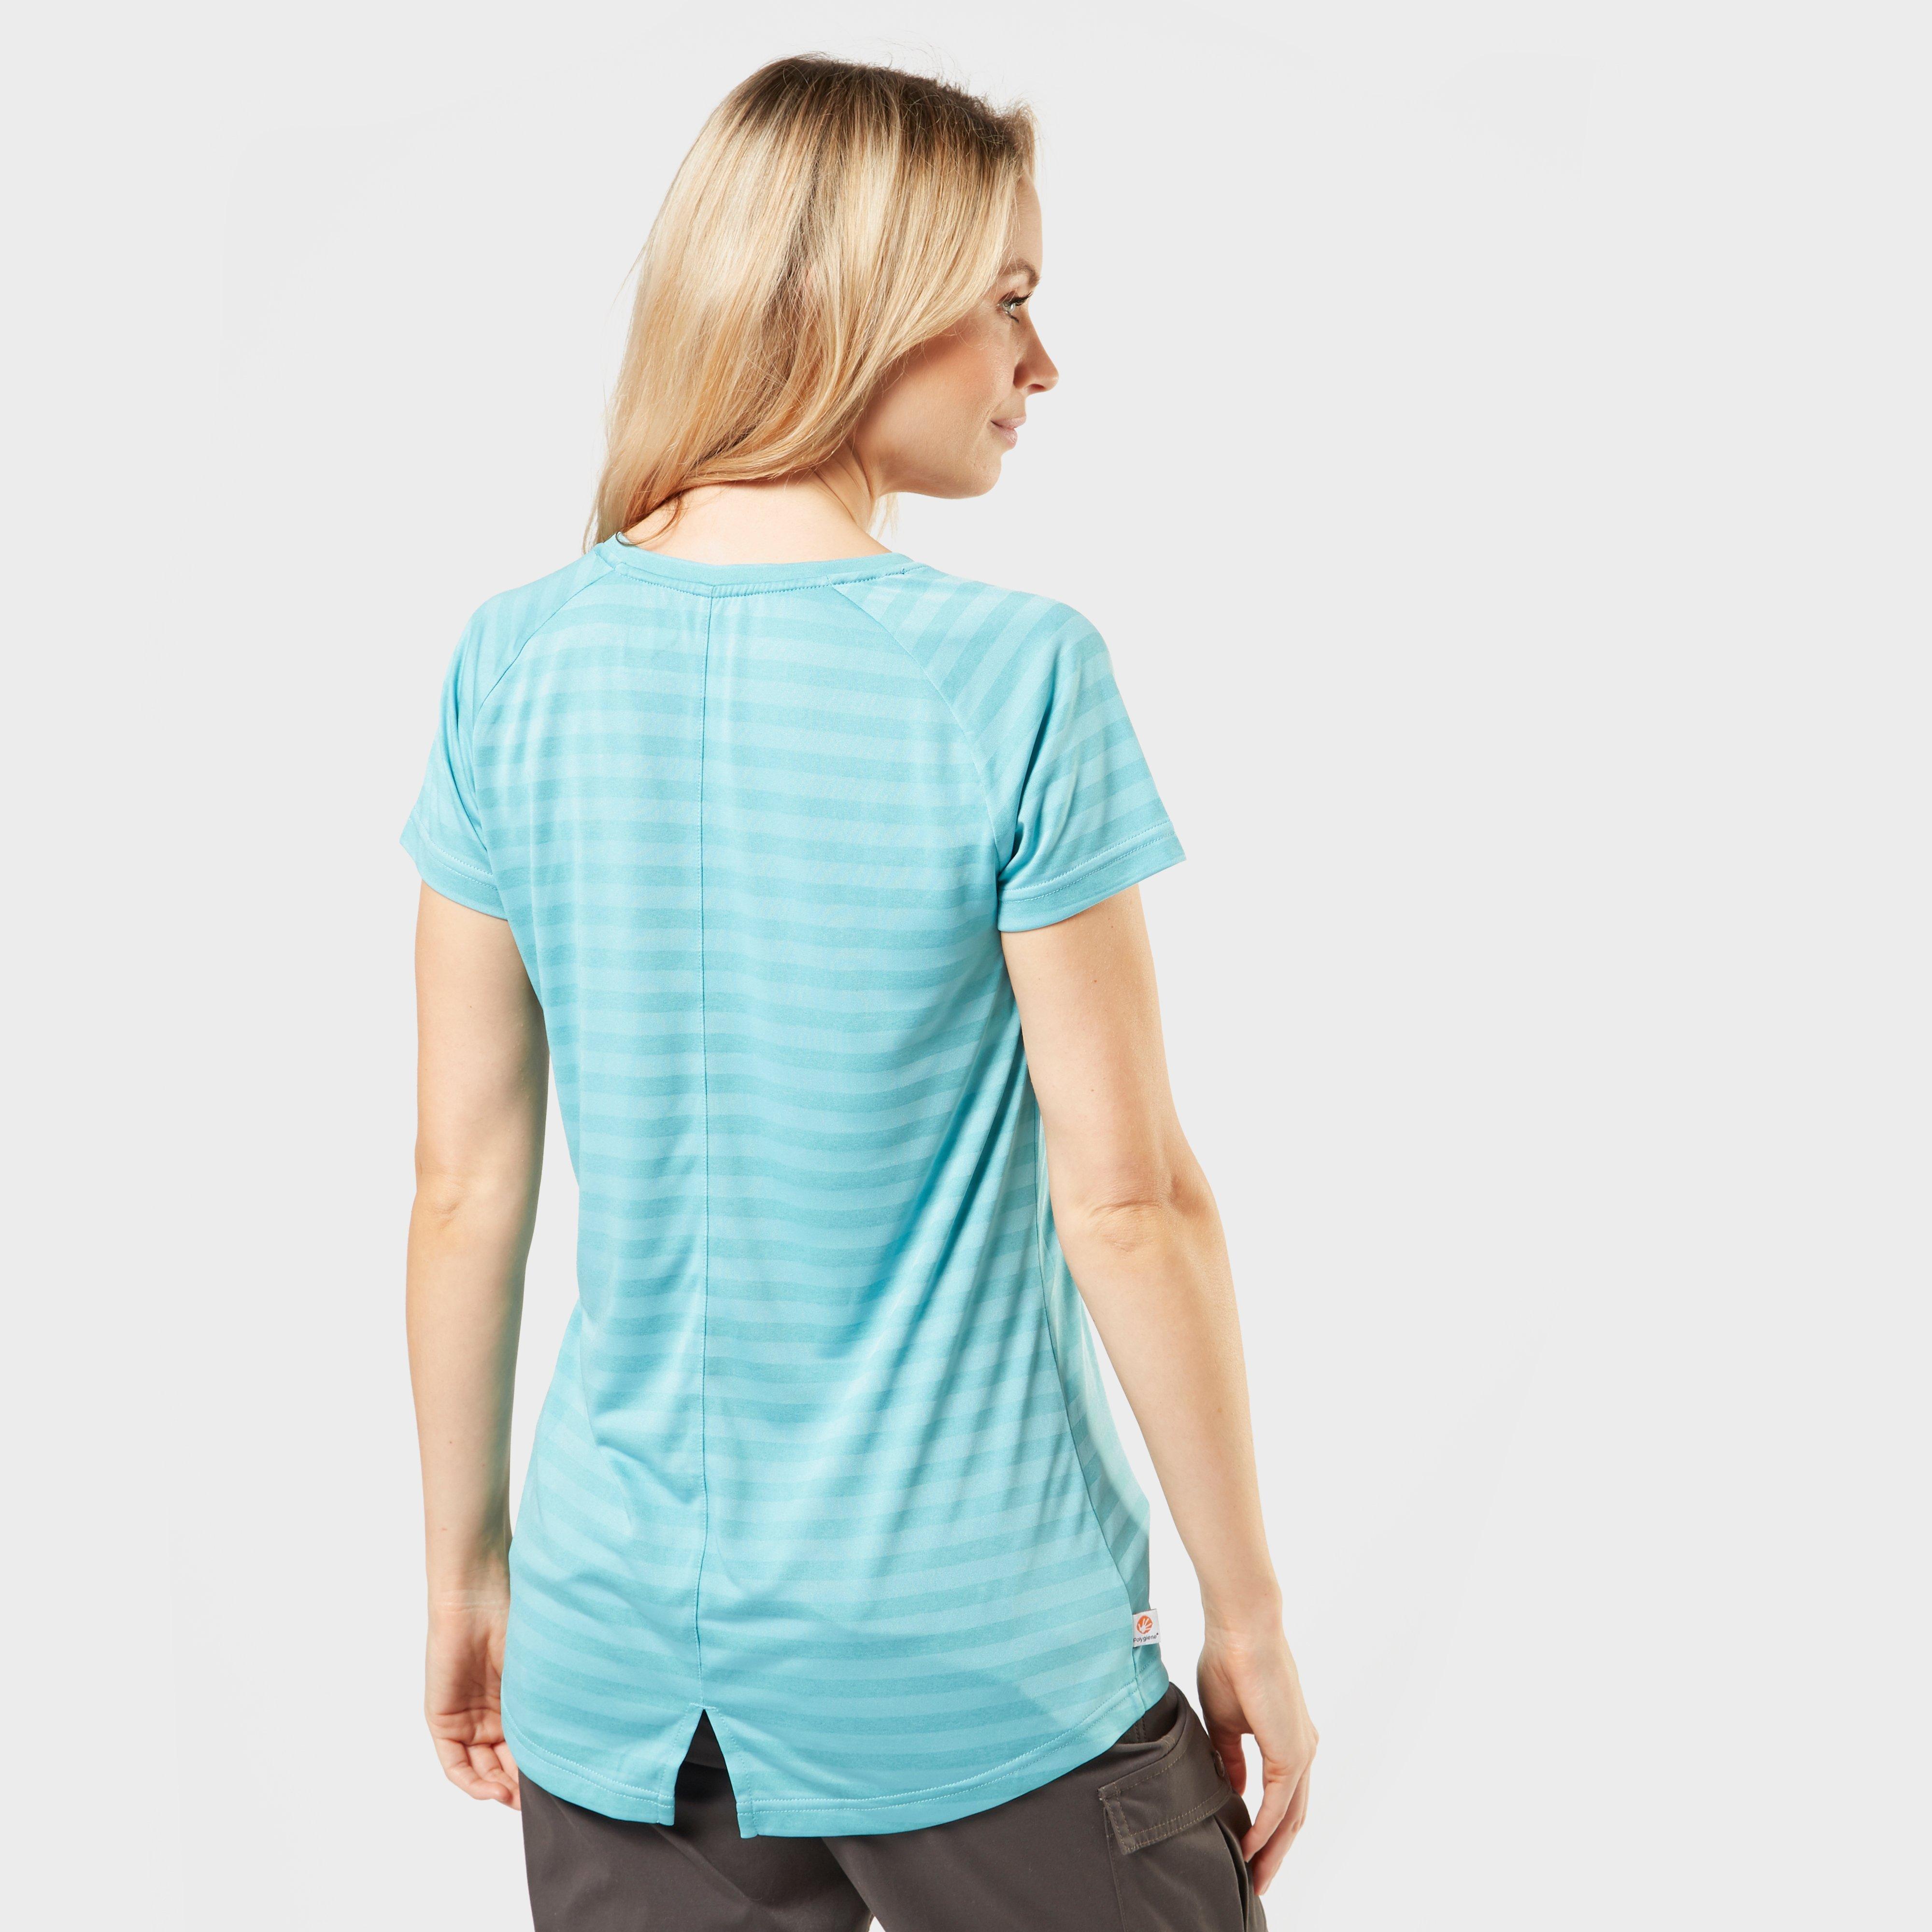 Sprayway Women’s Malpais Striped T-Shirt Review